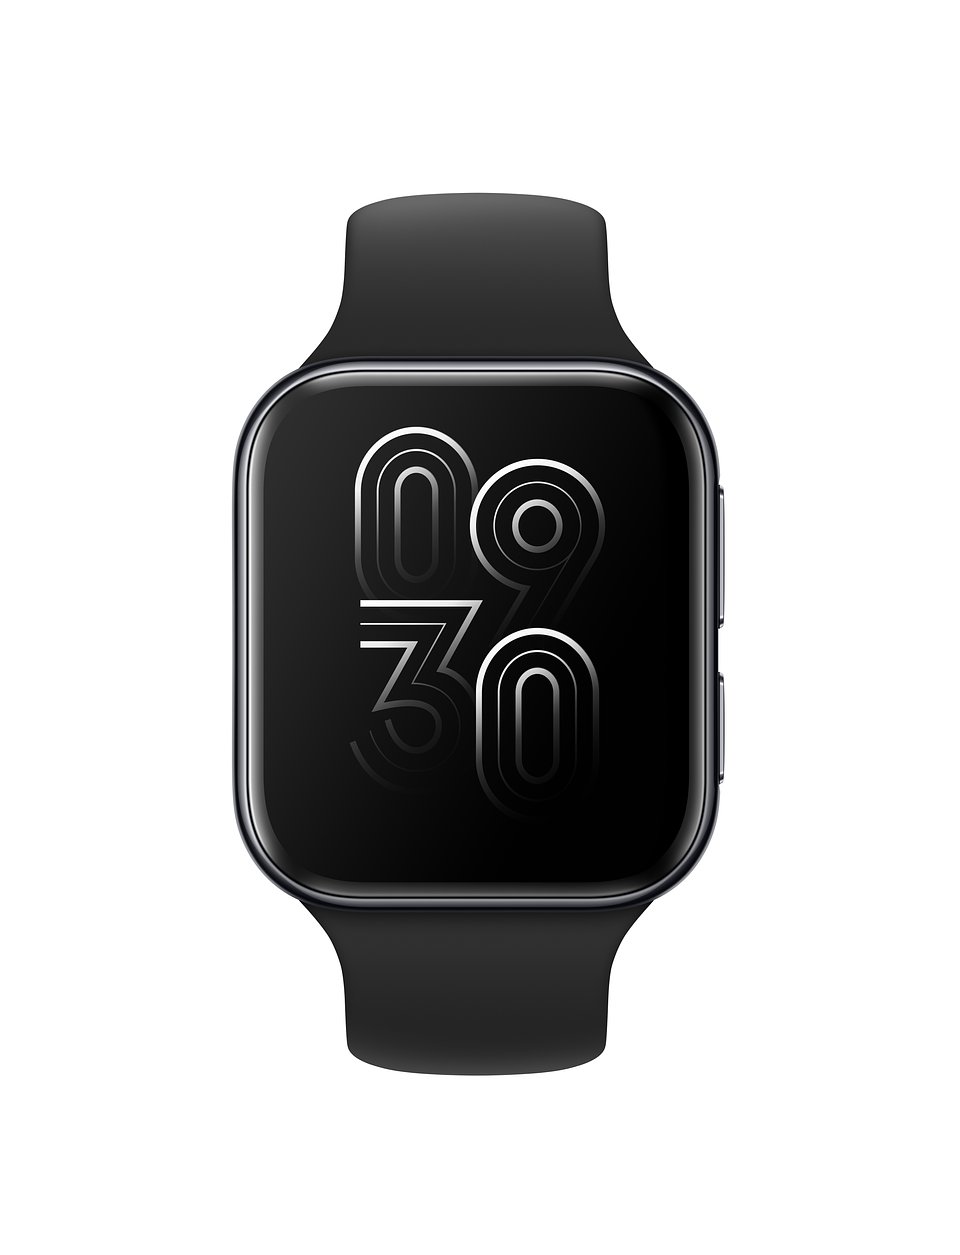 polska premiera Oppo Watch cena smartwatch z Wear OS opinie gdzie kupić najtaniej specyfikacja dane techniczne przedsprzedaż w Polsce